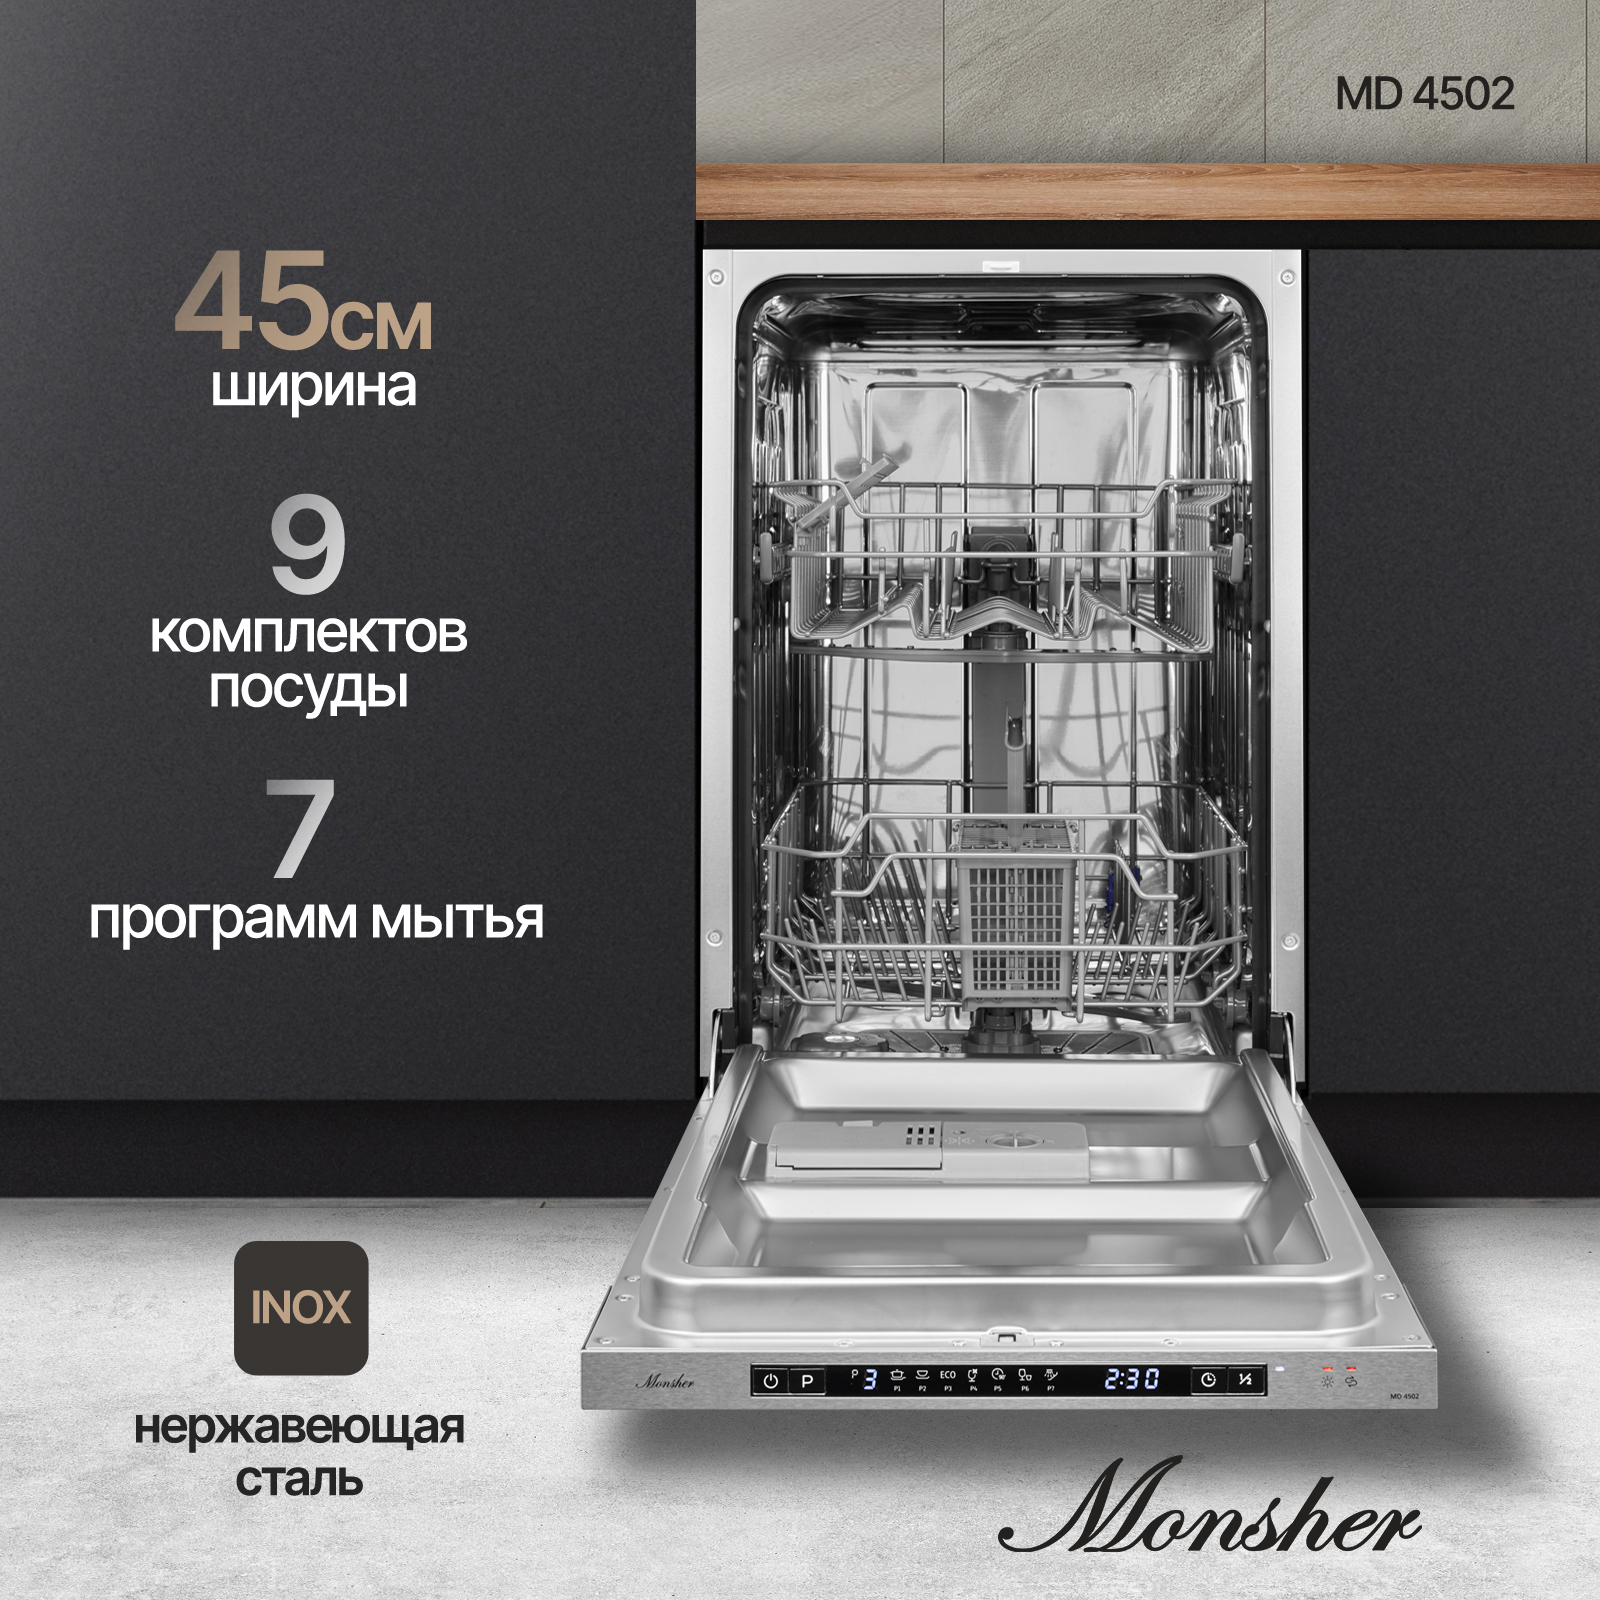 Встраиваемая посудомоечная машина Monsher MD 4502 встраиваемая посудомоечная машина monsher md 4501